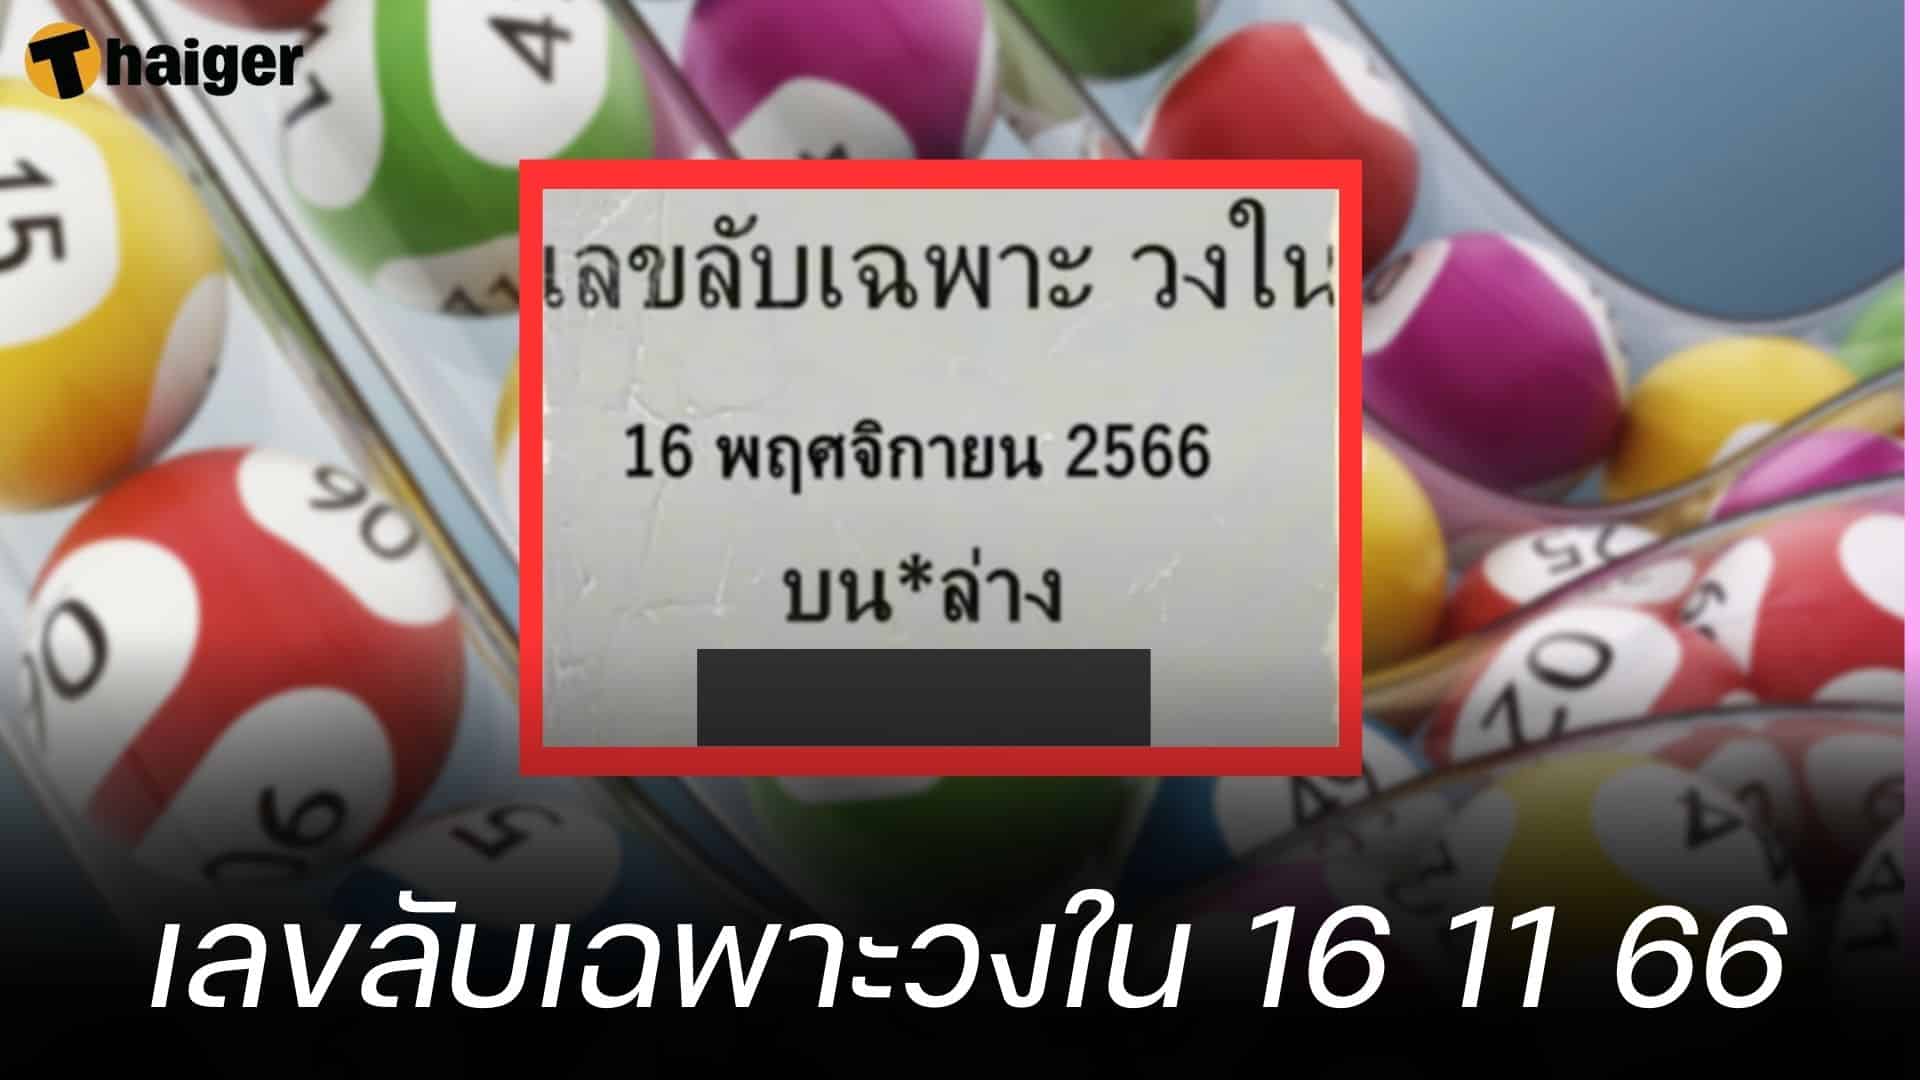 ตามด่วน เลขลับเฉพาะวงใน 16 พ.ย. 66 รู้กันแค่นี้ อย่าเอาไปบอกต่อ | Thaiger ข่าวไทย